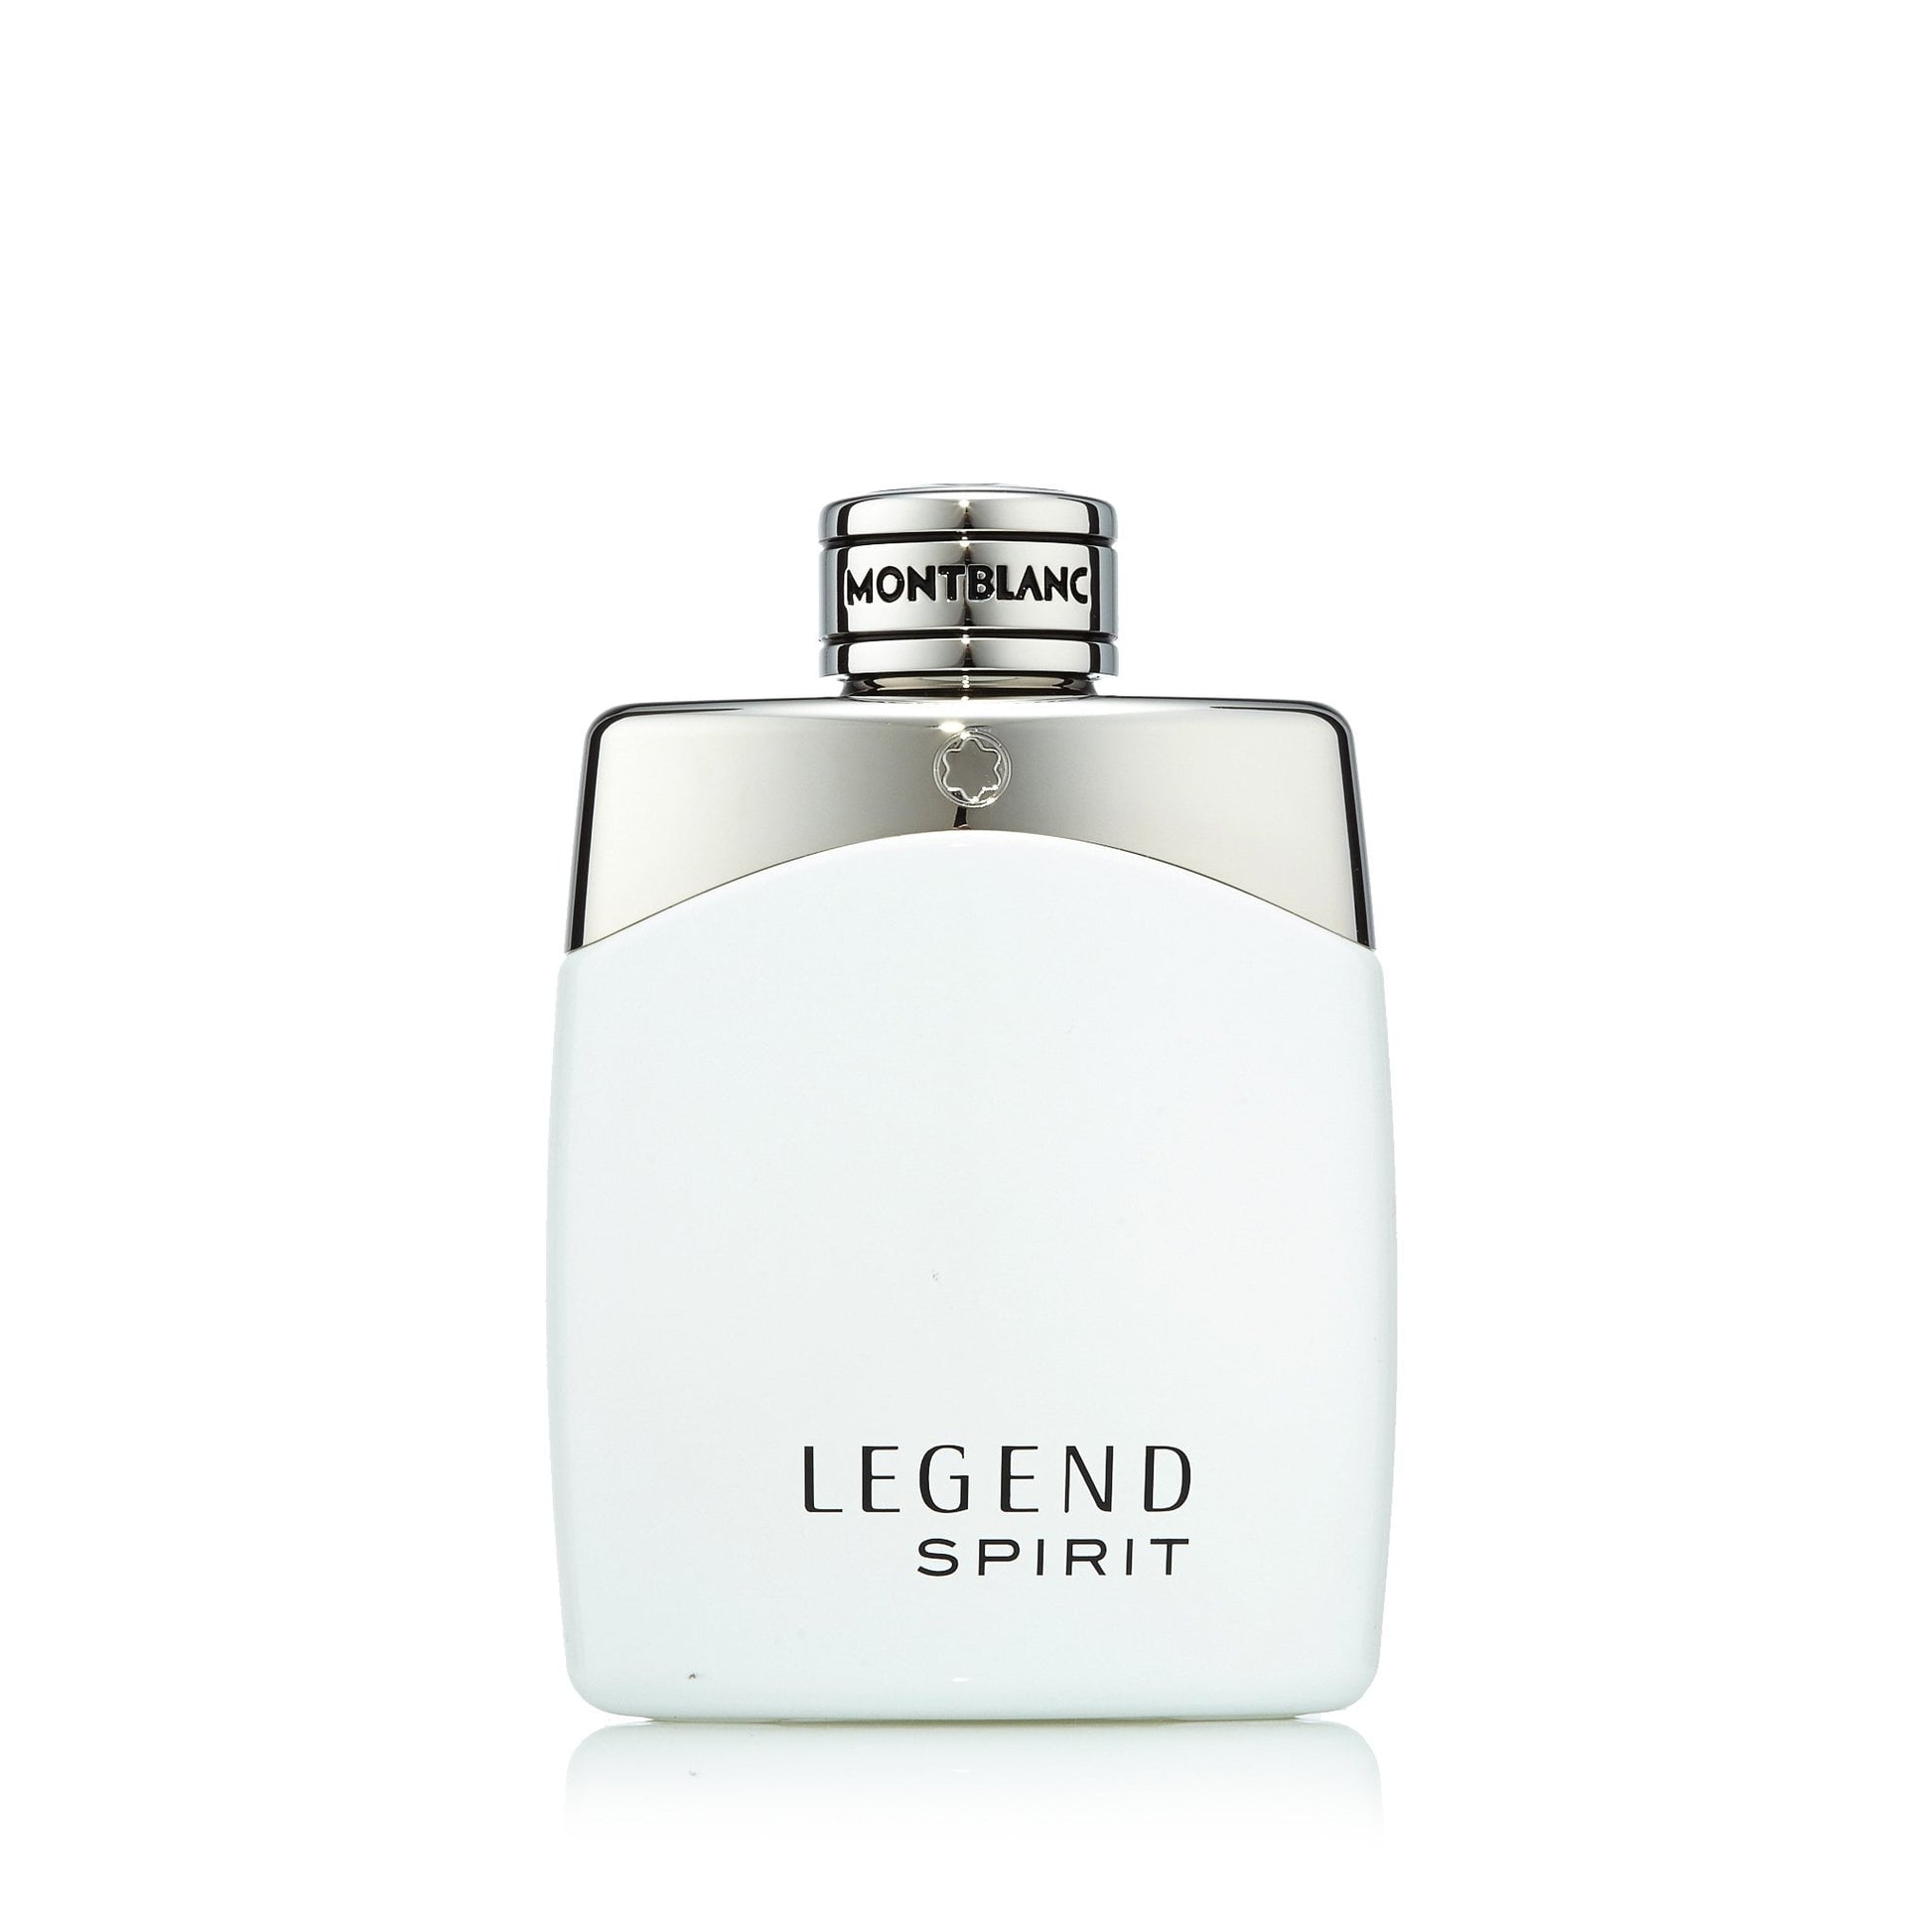 Legend Spirit Eau de Toilette Spray for Men by Montblanc, Product image 4